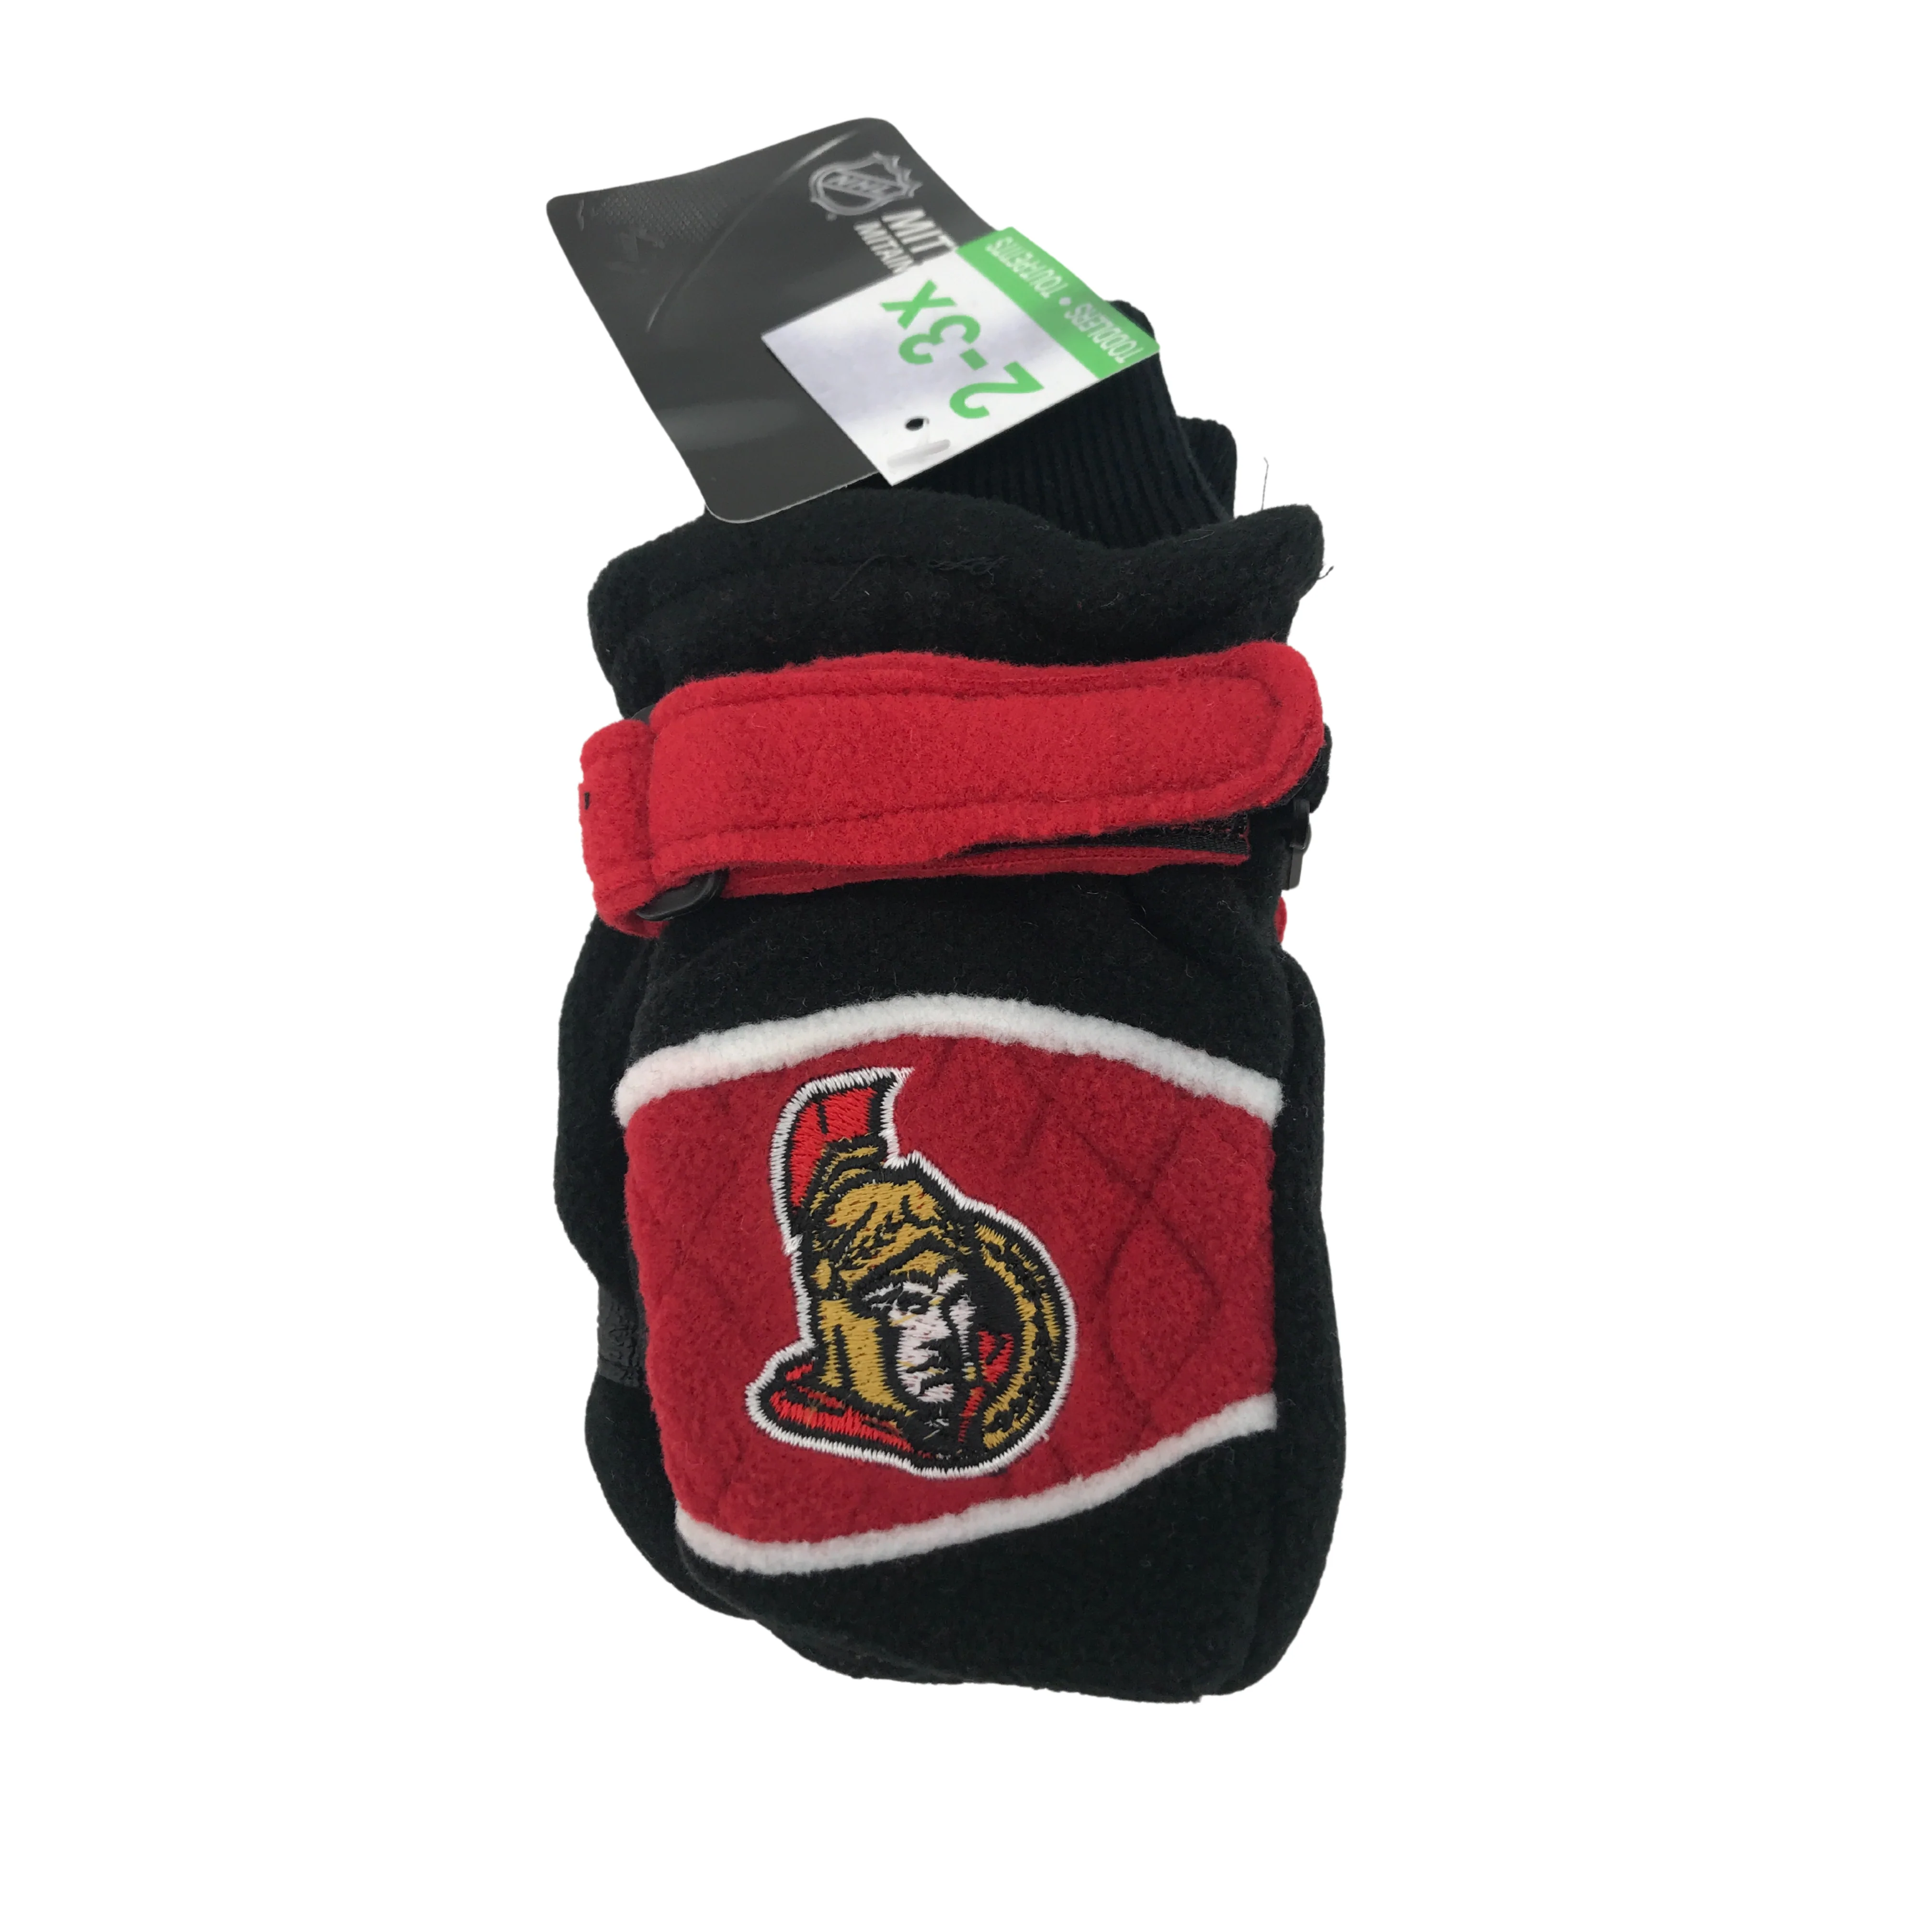 Ottawa Senators Kid's Winter Mittens / Black / Size 2-3x / Kid's Gloves / NHL Winter Gear